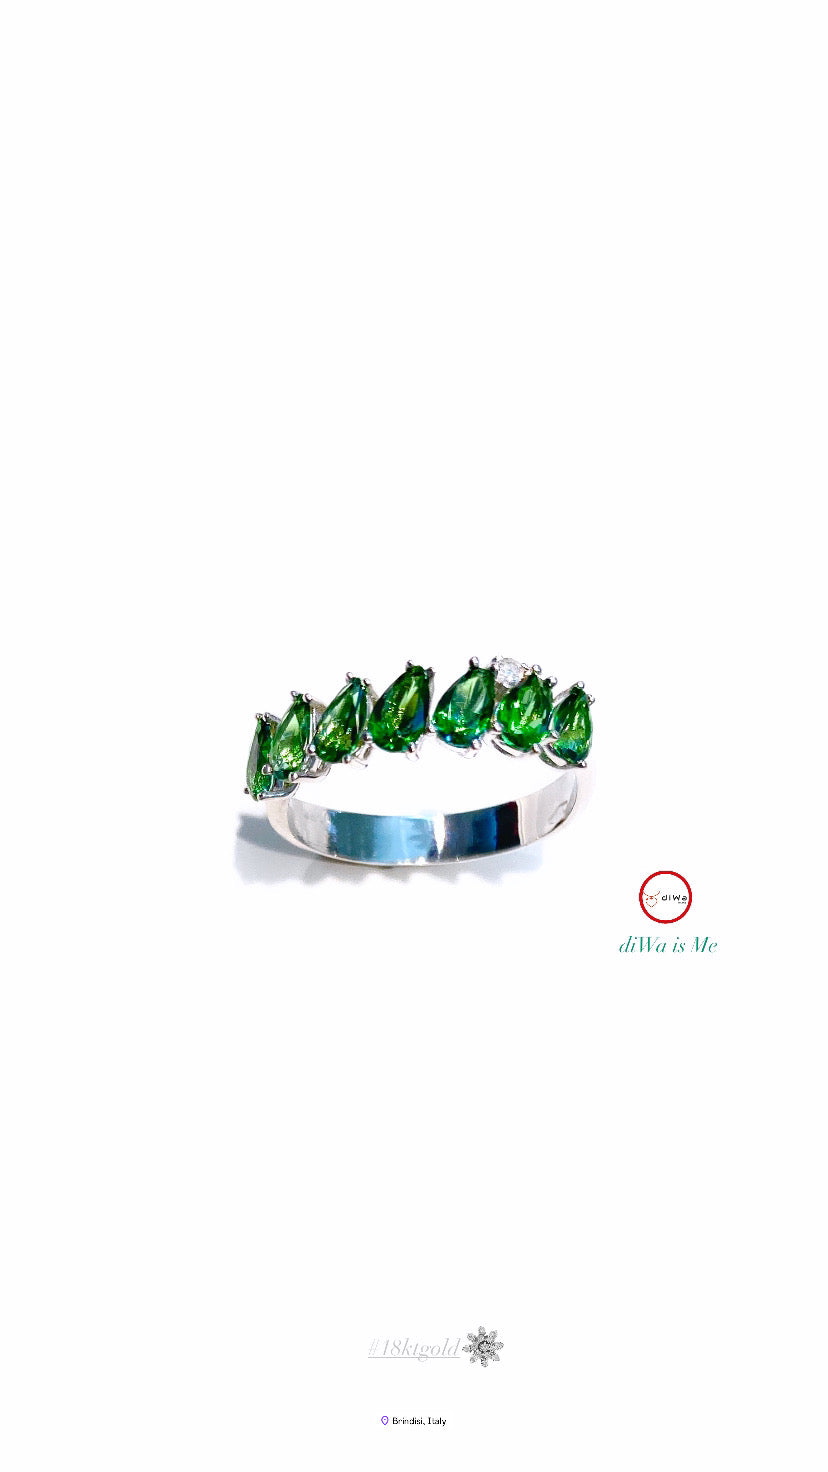 Anello veretta gocce topazio verde paraiba diamante naturale oro bianco 18 Kt